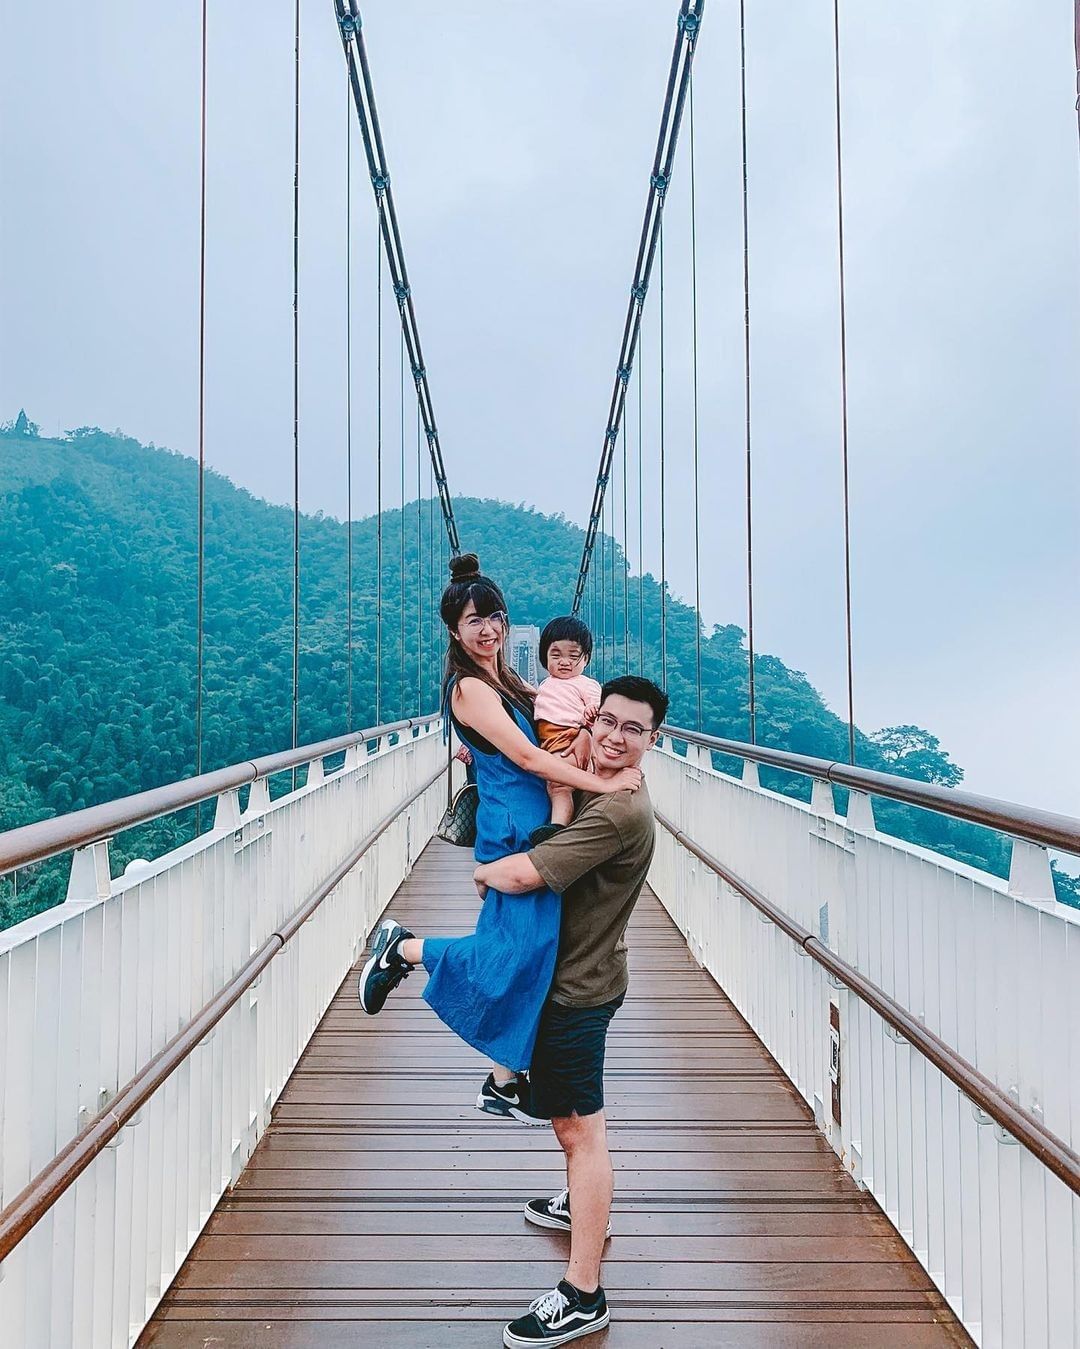 可愛的一家人下次到太平雲梯就這樣拍照吧照片授權感謝 @shiaushiau -⠀歡迎在您的貼文 #travelalishan 或 ...